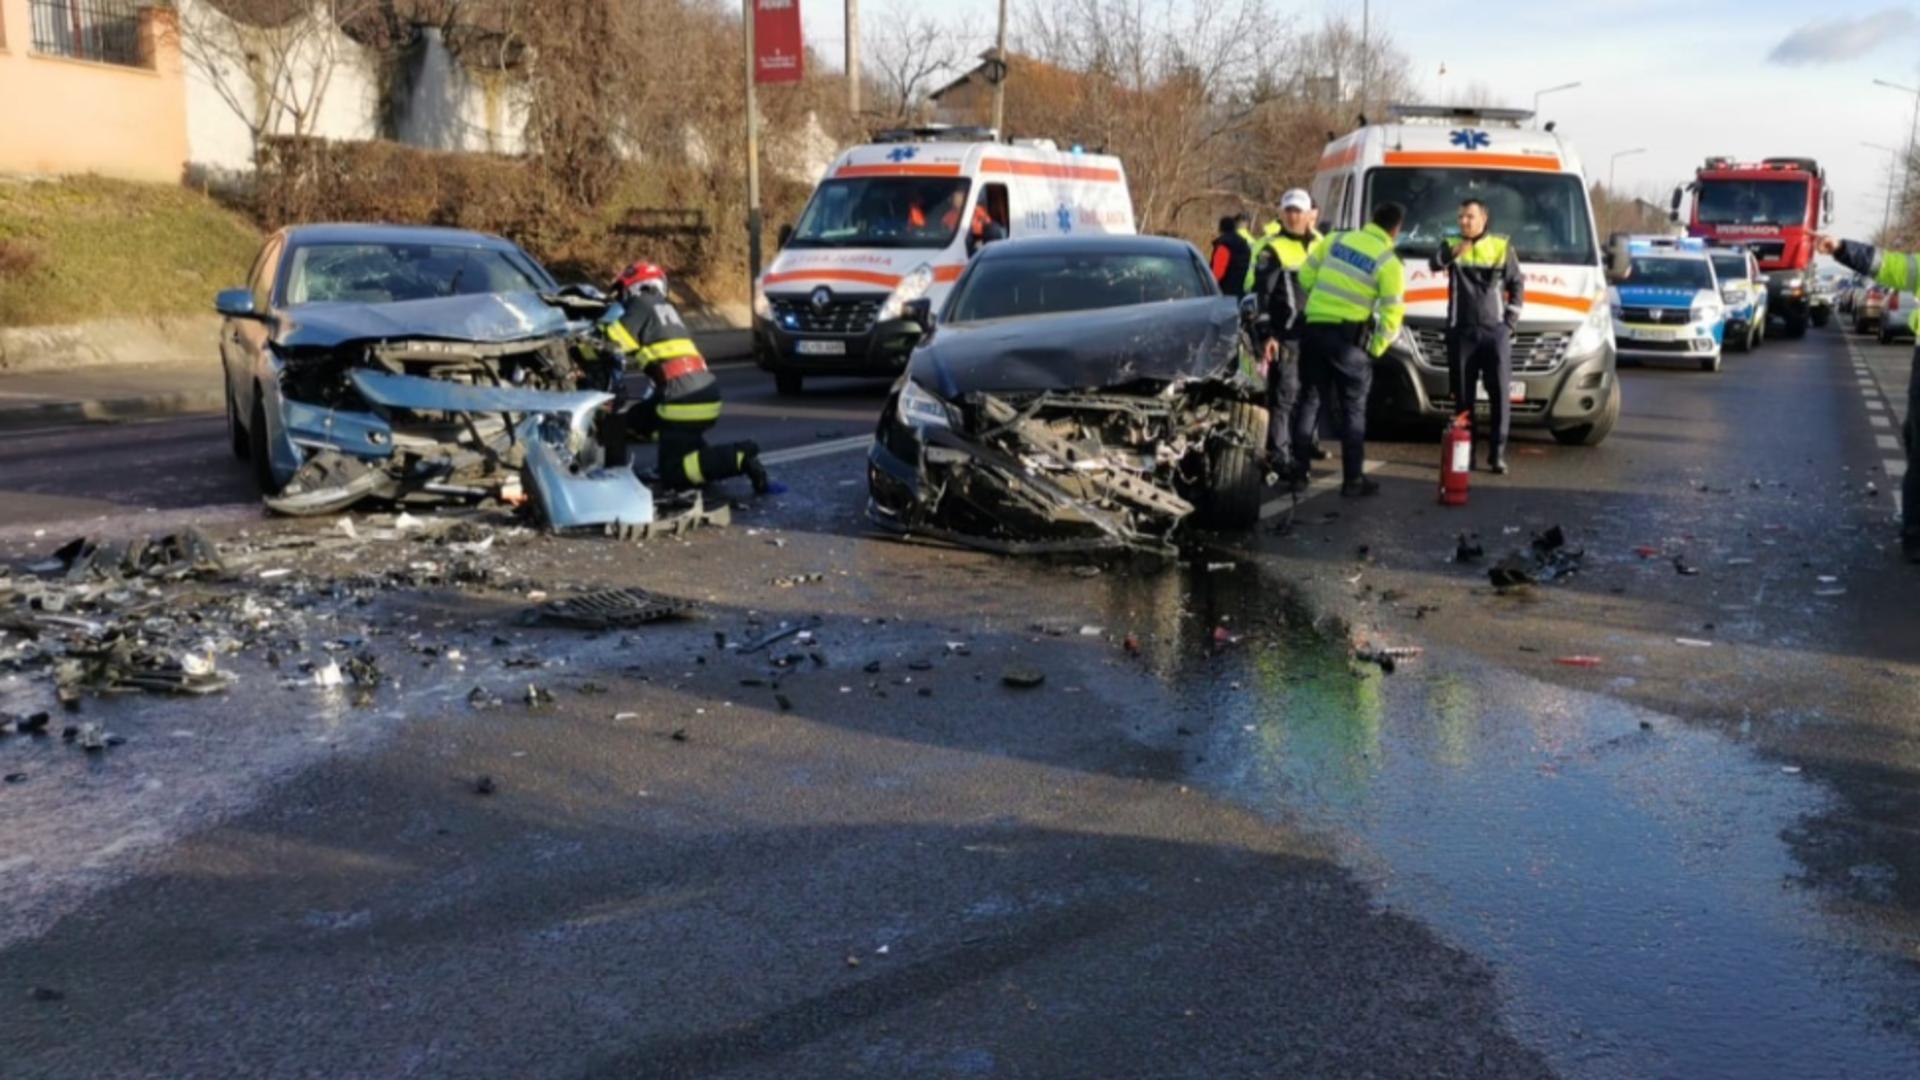 Carambol cu 3 mașini la intrarea în Râmnicu Vâlcea: 3 persoane au ajuns la spital în urma impactului violent